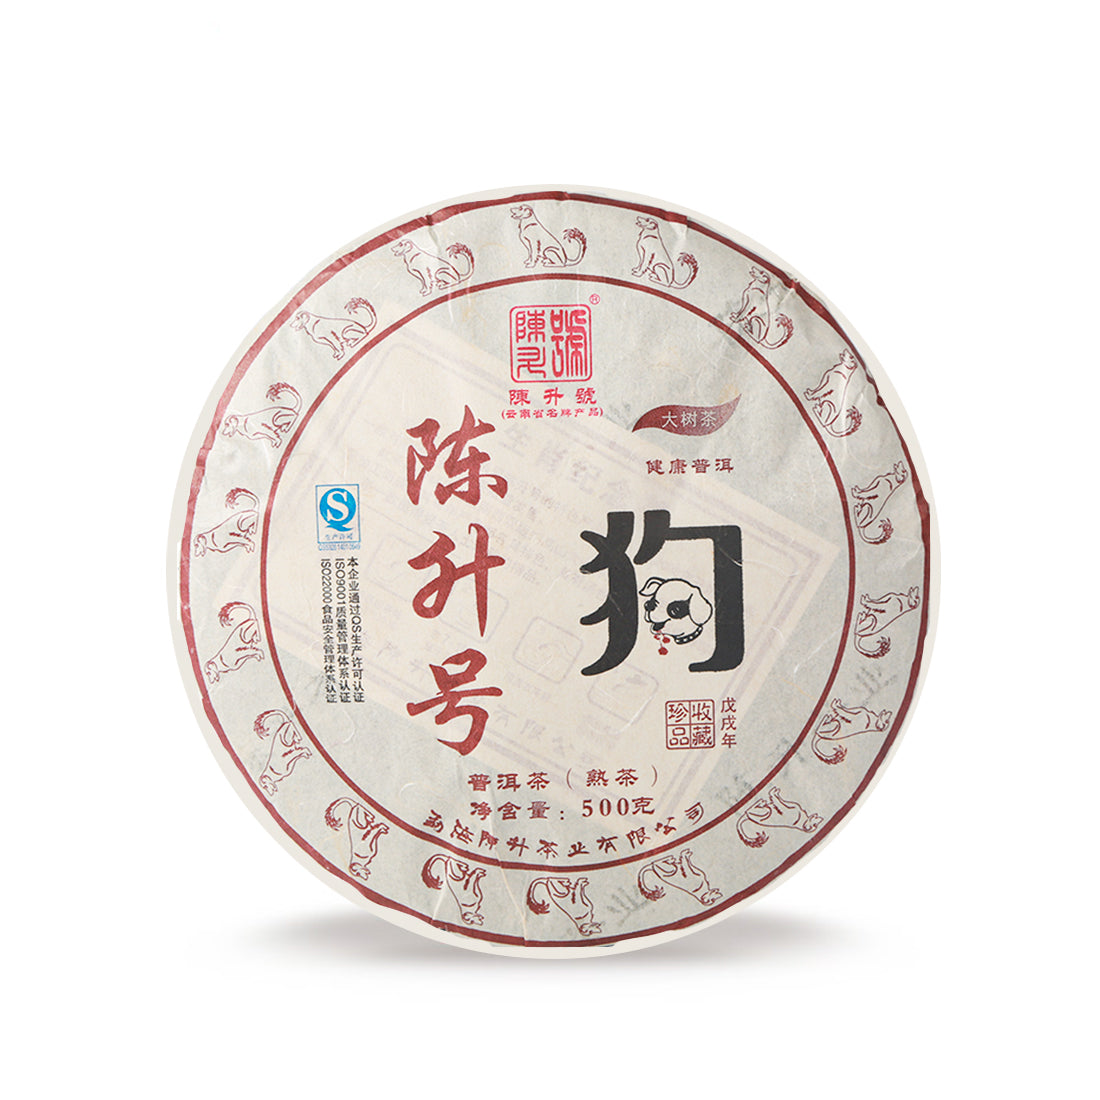 
                  
                    Chen Sheng Hao 2018 Zodiac Dog Ripe Pu'er Tea Cake
                  
                